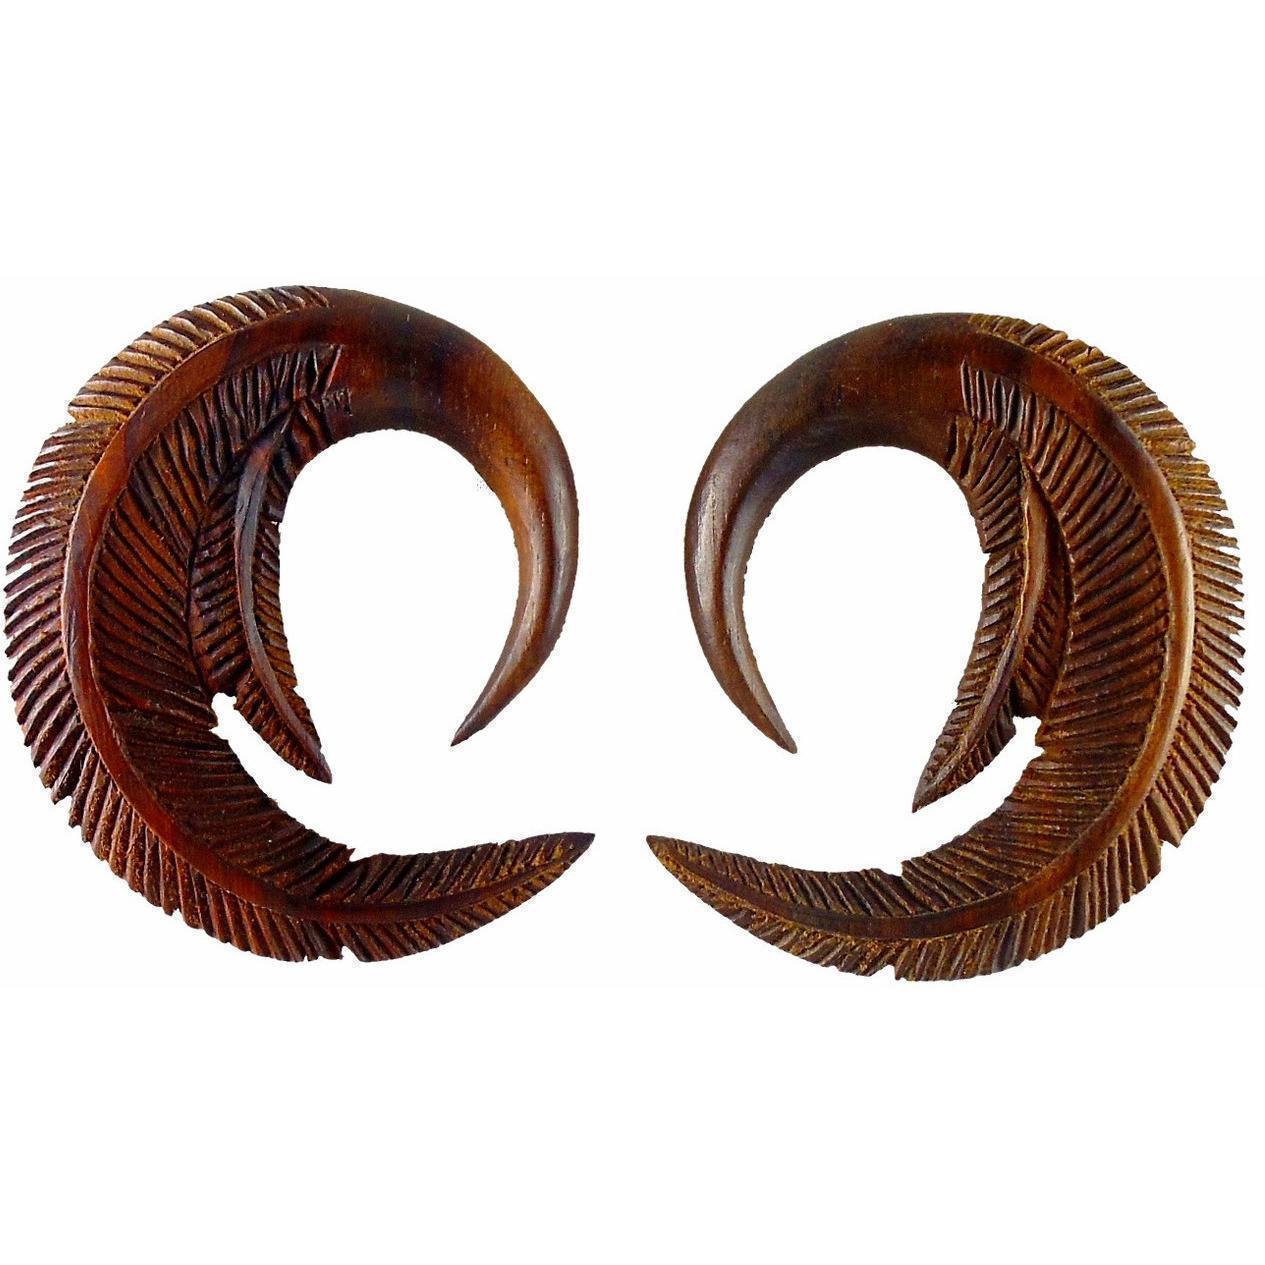 00 Gauge Earrings :|: Feather. 00 gauge Rosewood Earrings. 1 3/4 inch W X 2 inch L | Wood Body Jewelry